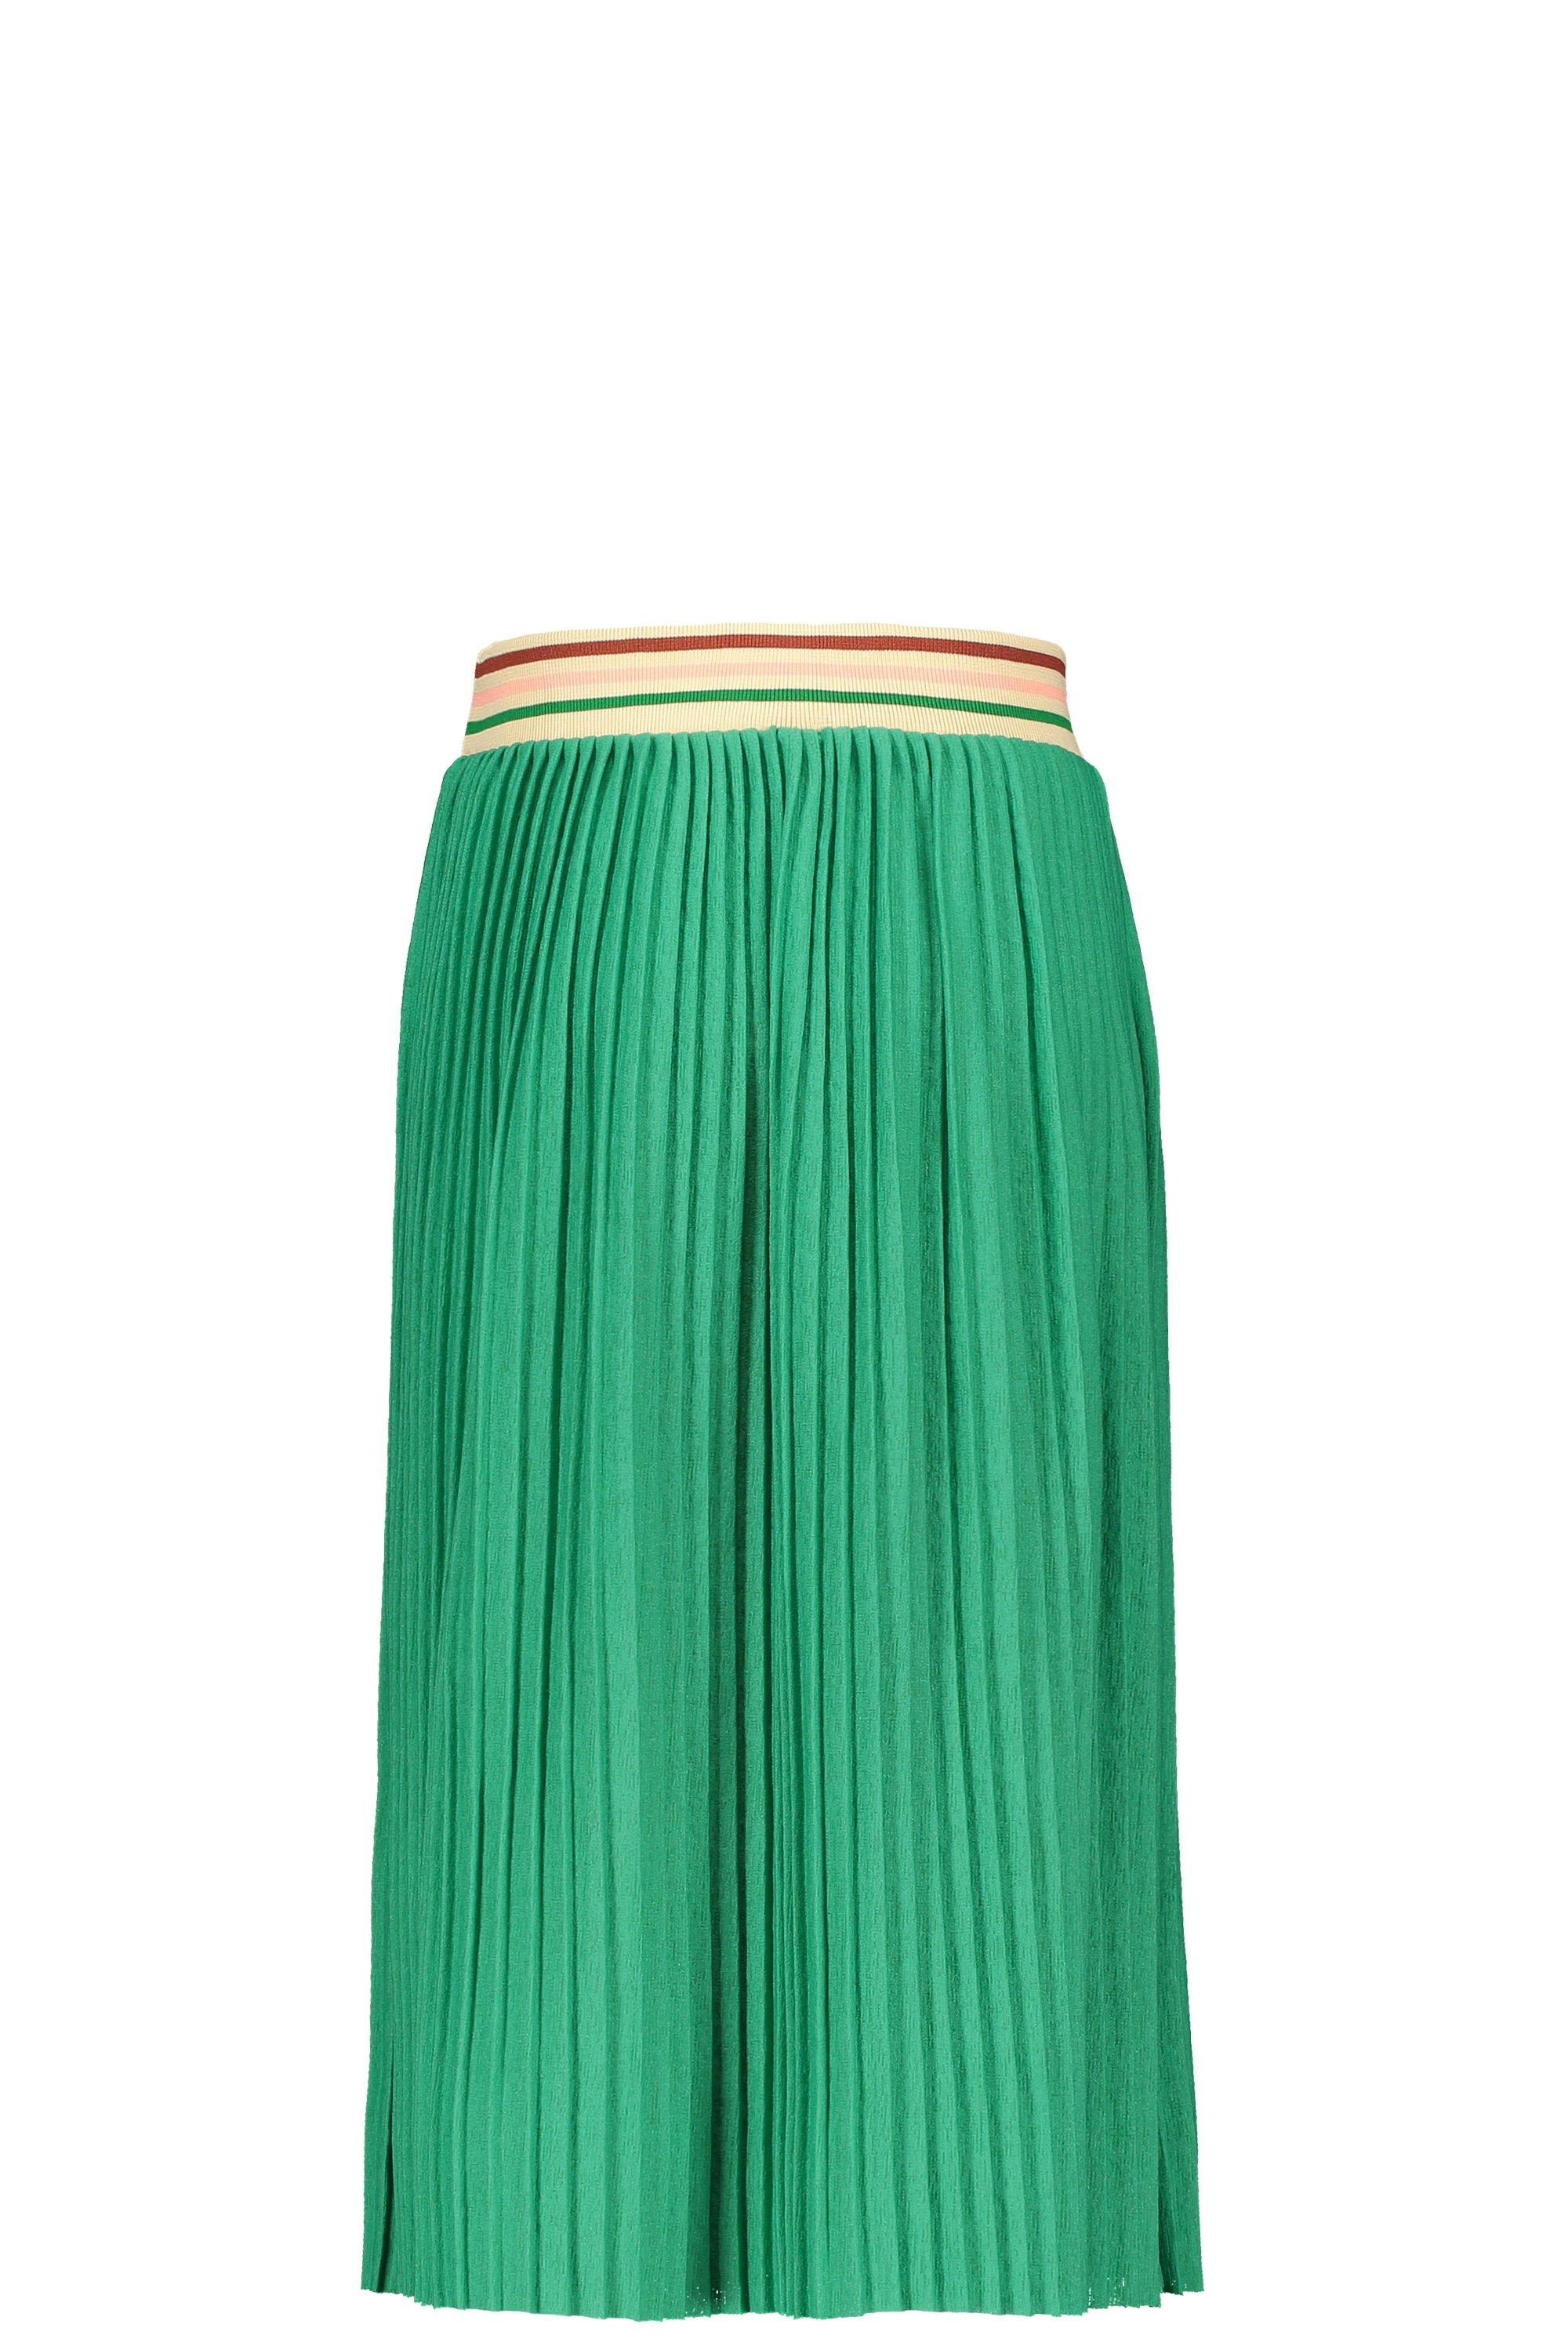 Meisjes Flo girls jersey plisse skirt maxi van Like Flo in de kleur Green in maat 152.